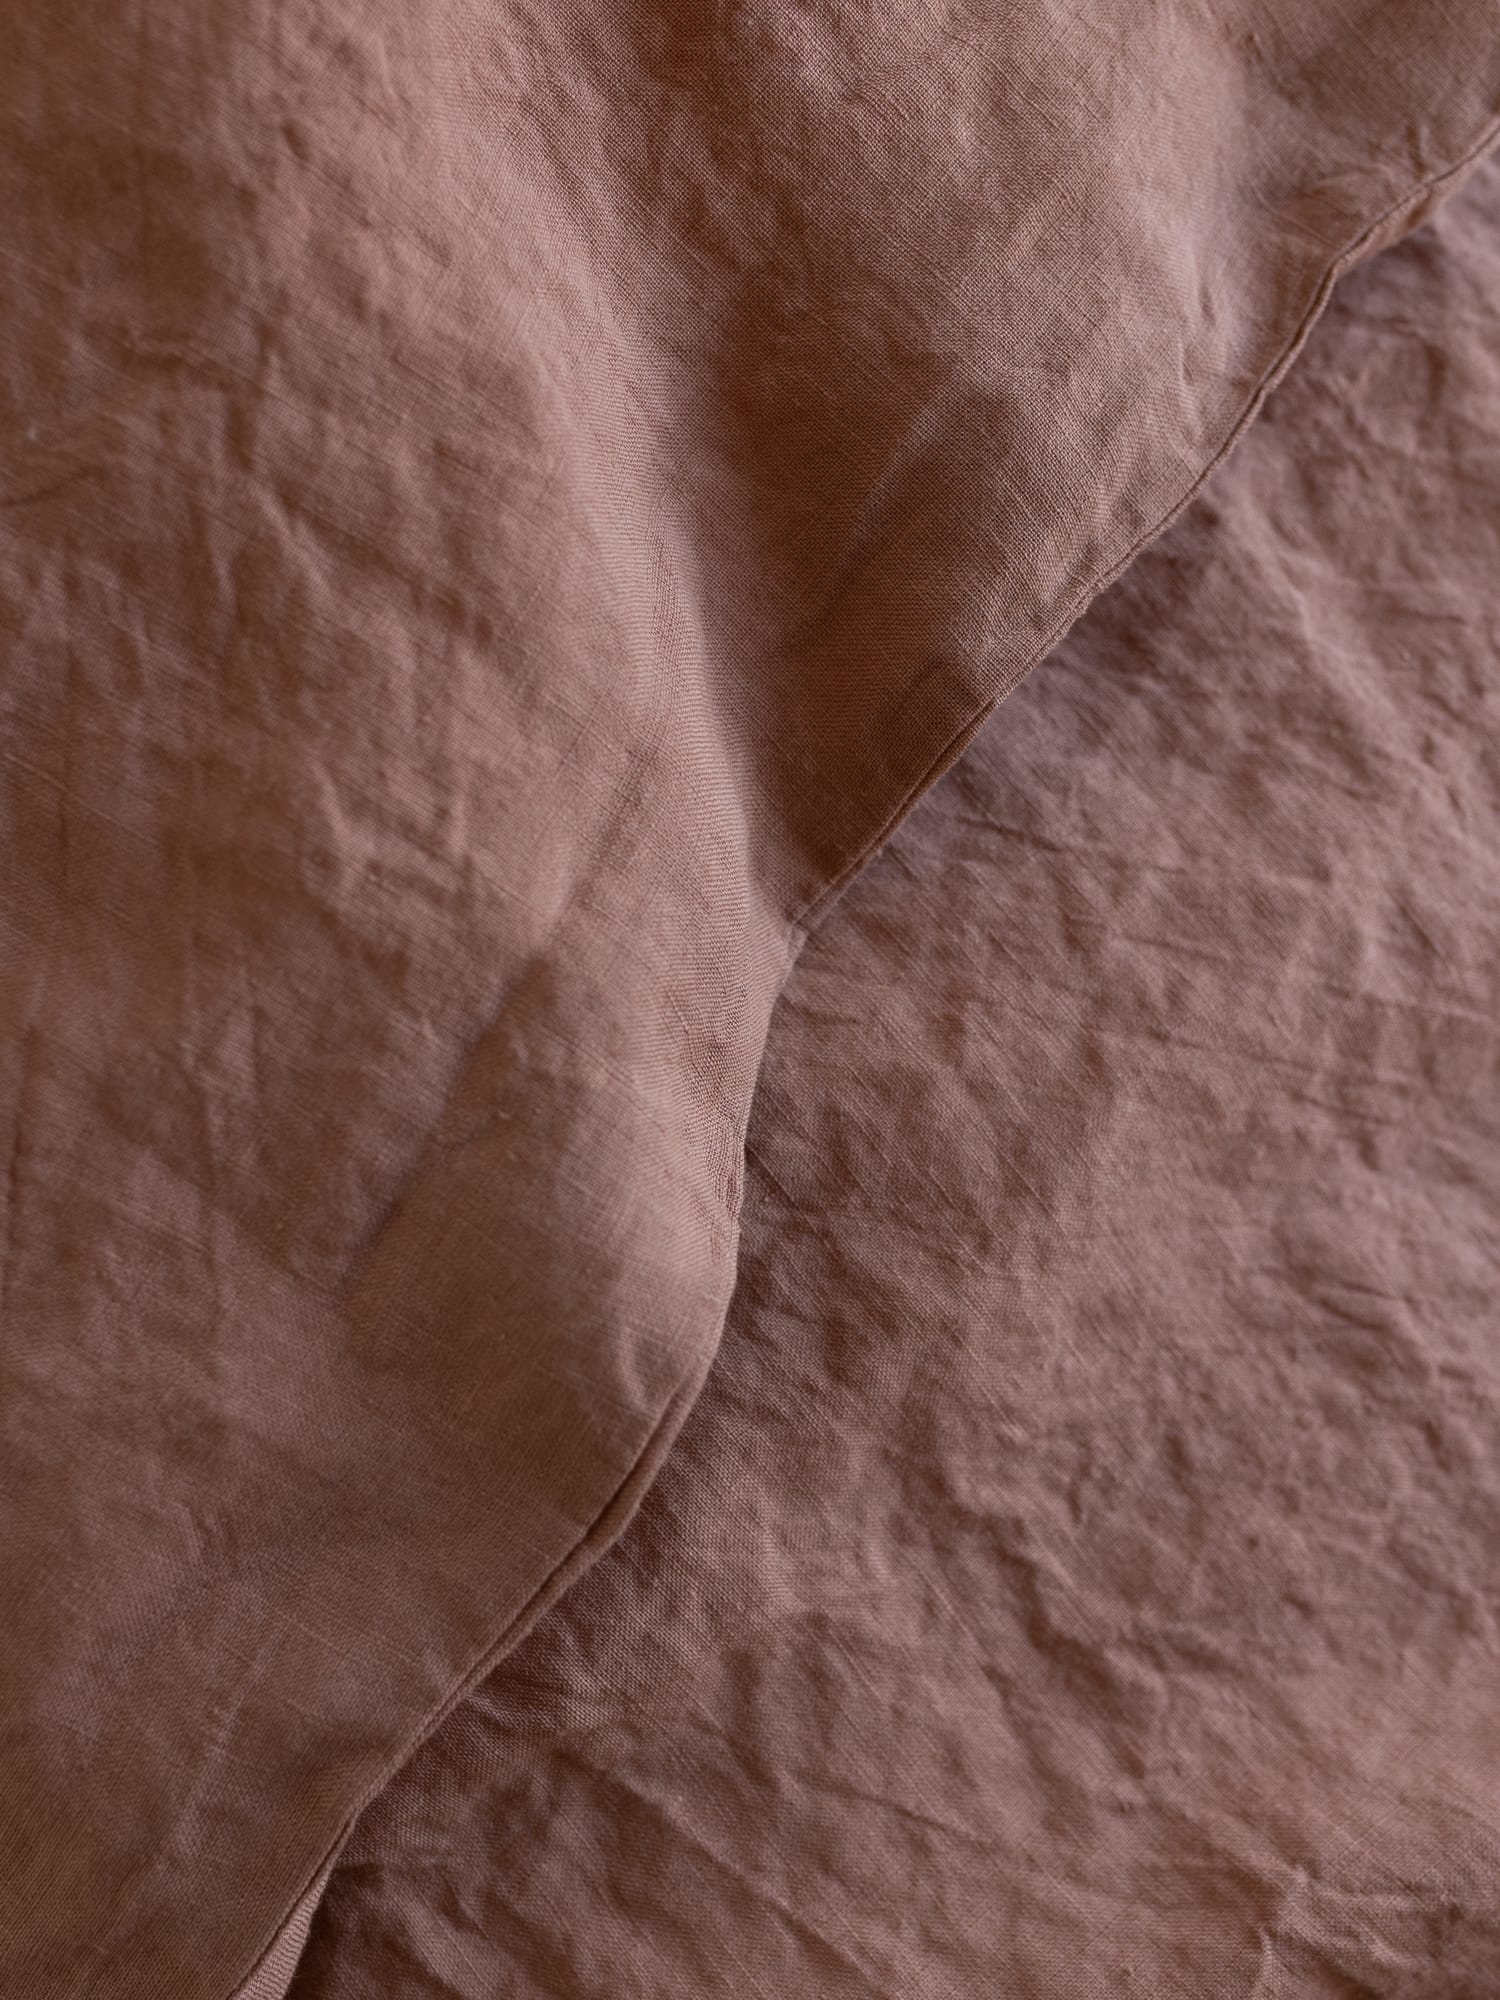 100% linnen - Dekbedovertrek set - 2 kussenslopen - Lits-Jumeaux (240 x 220 cm) - Warm roze - Linnen Label